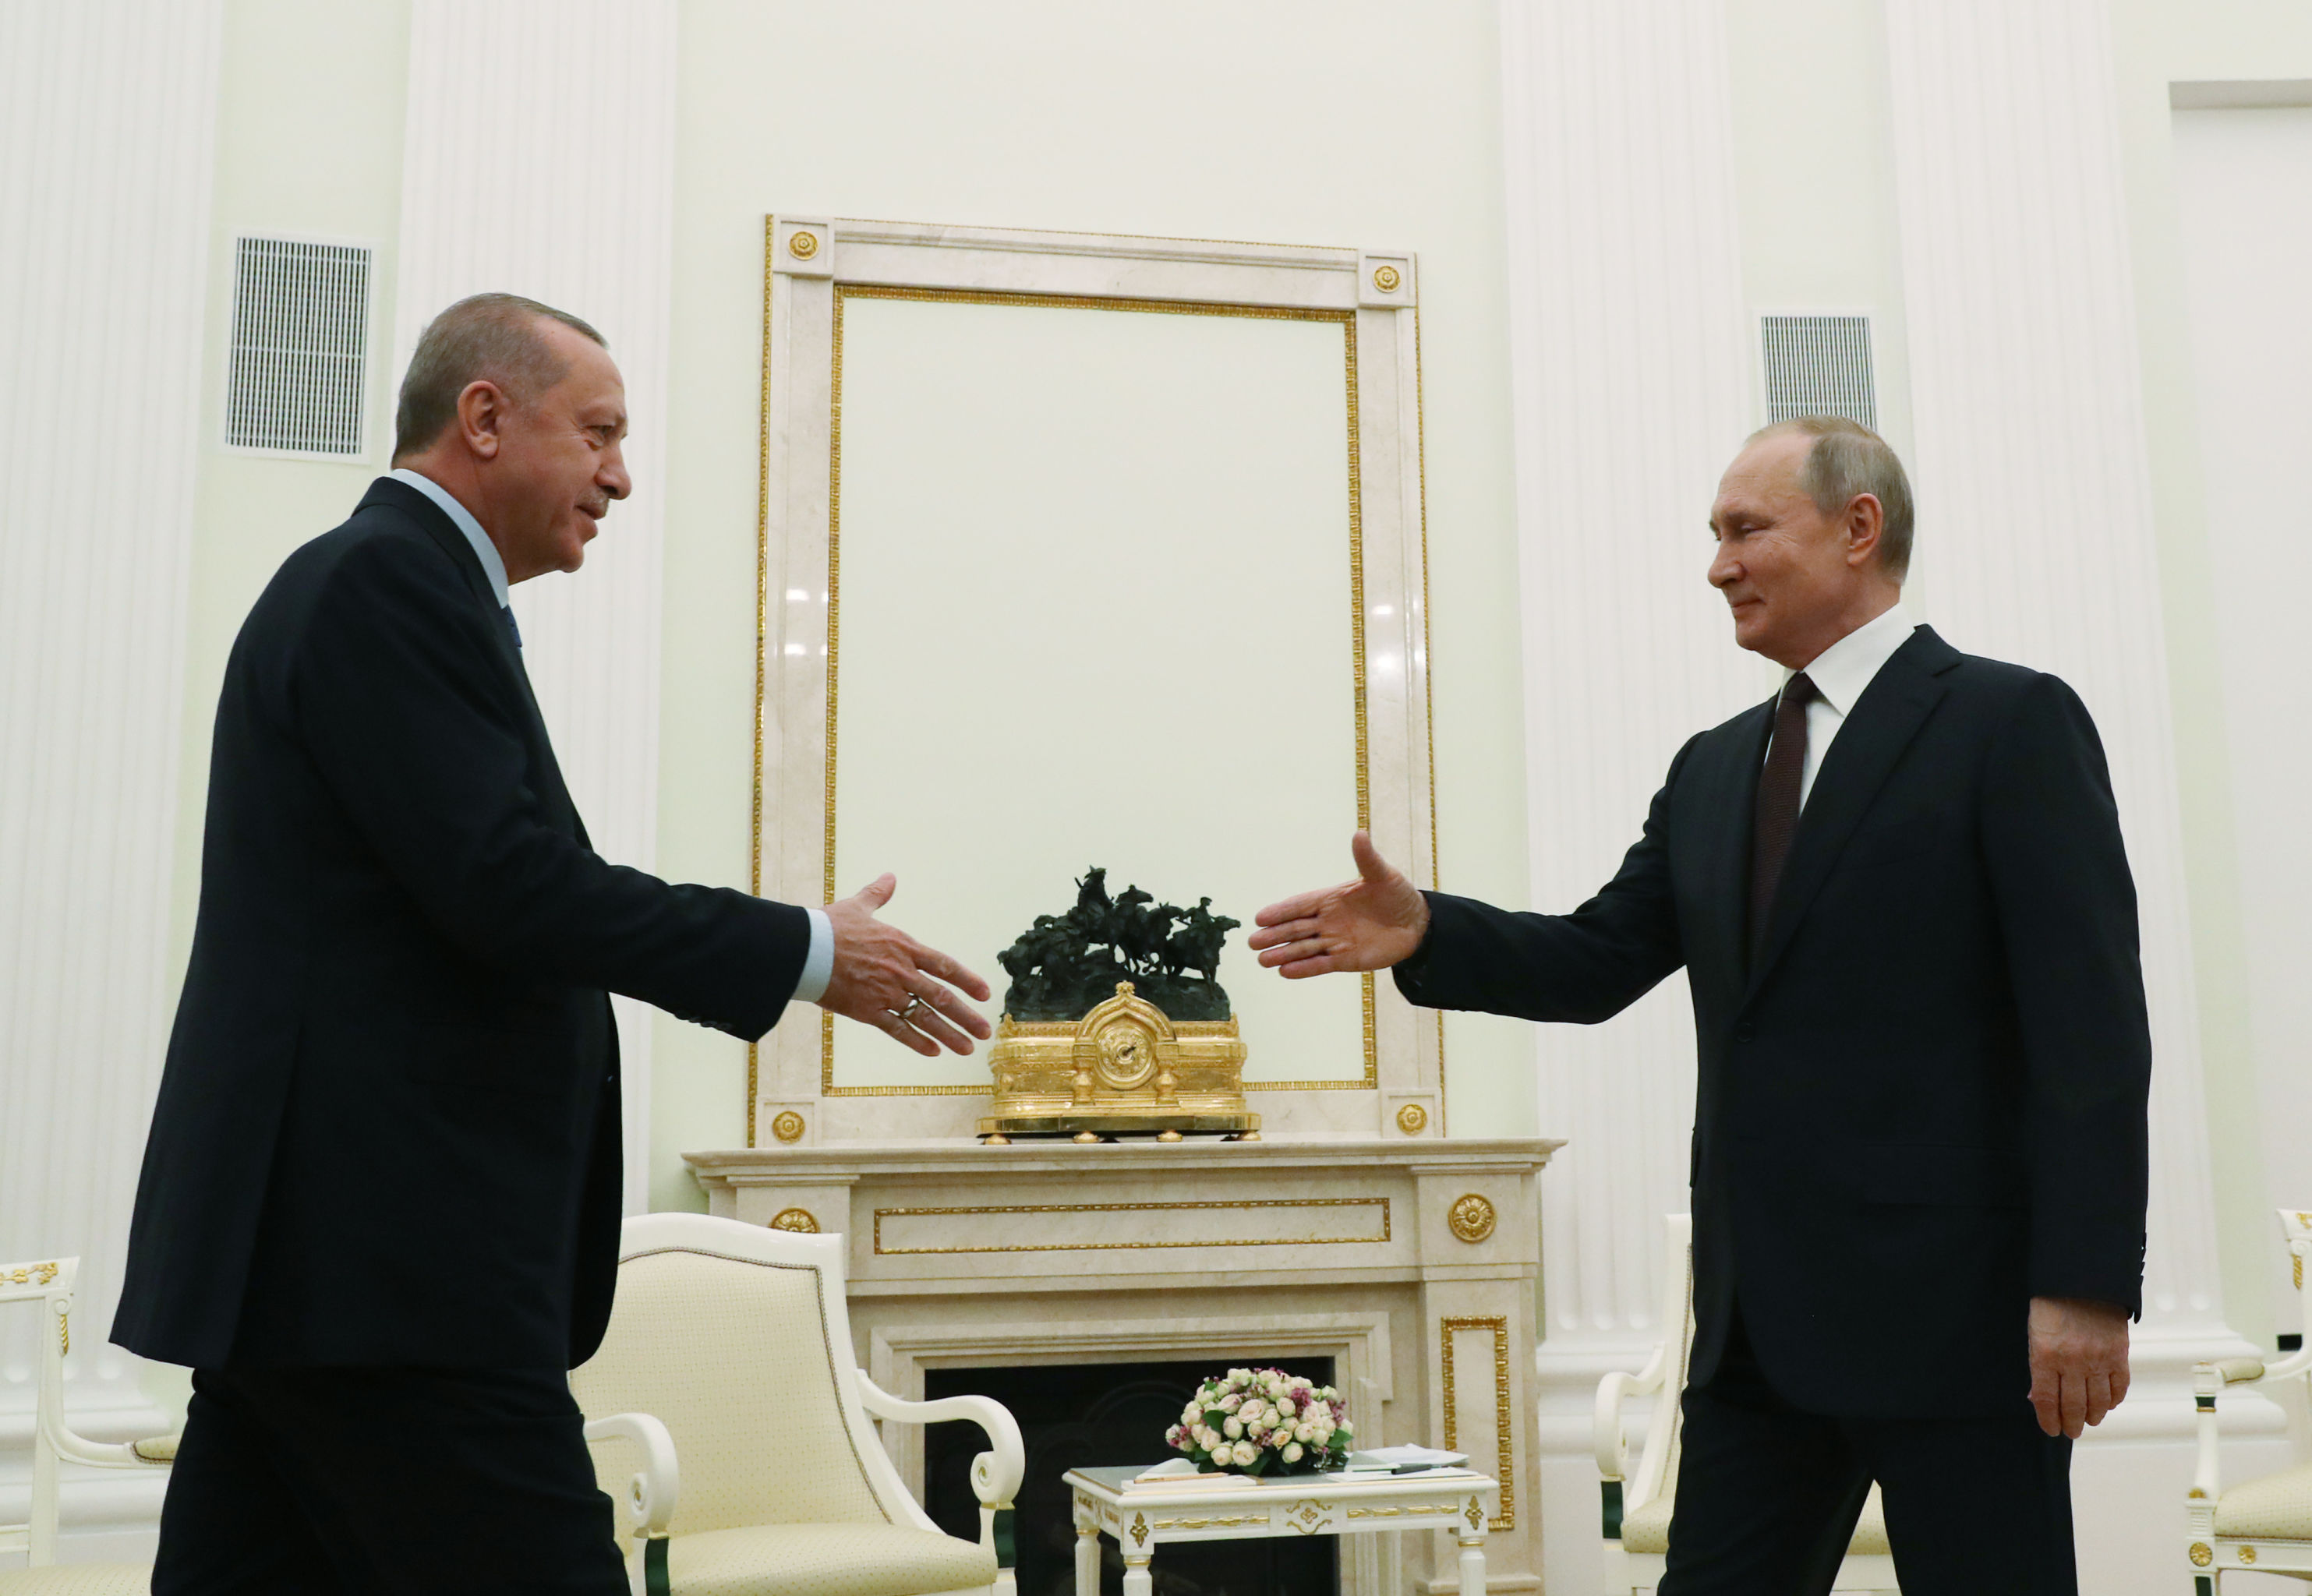  Türkiye Cumhurbaşkanı Recep Tayyip Erdoğan ve Rusya Devlet Başkanı Vladimir Putin, Moskova'da bir araya geldi. - Sputnik Türkiye